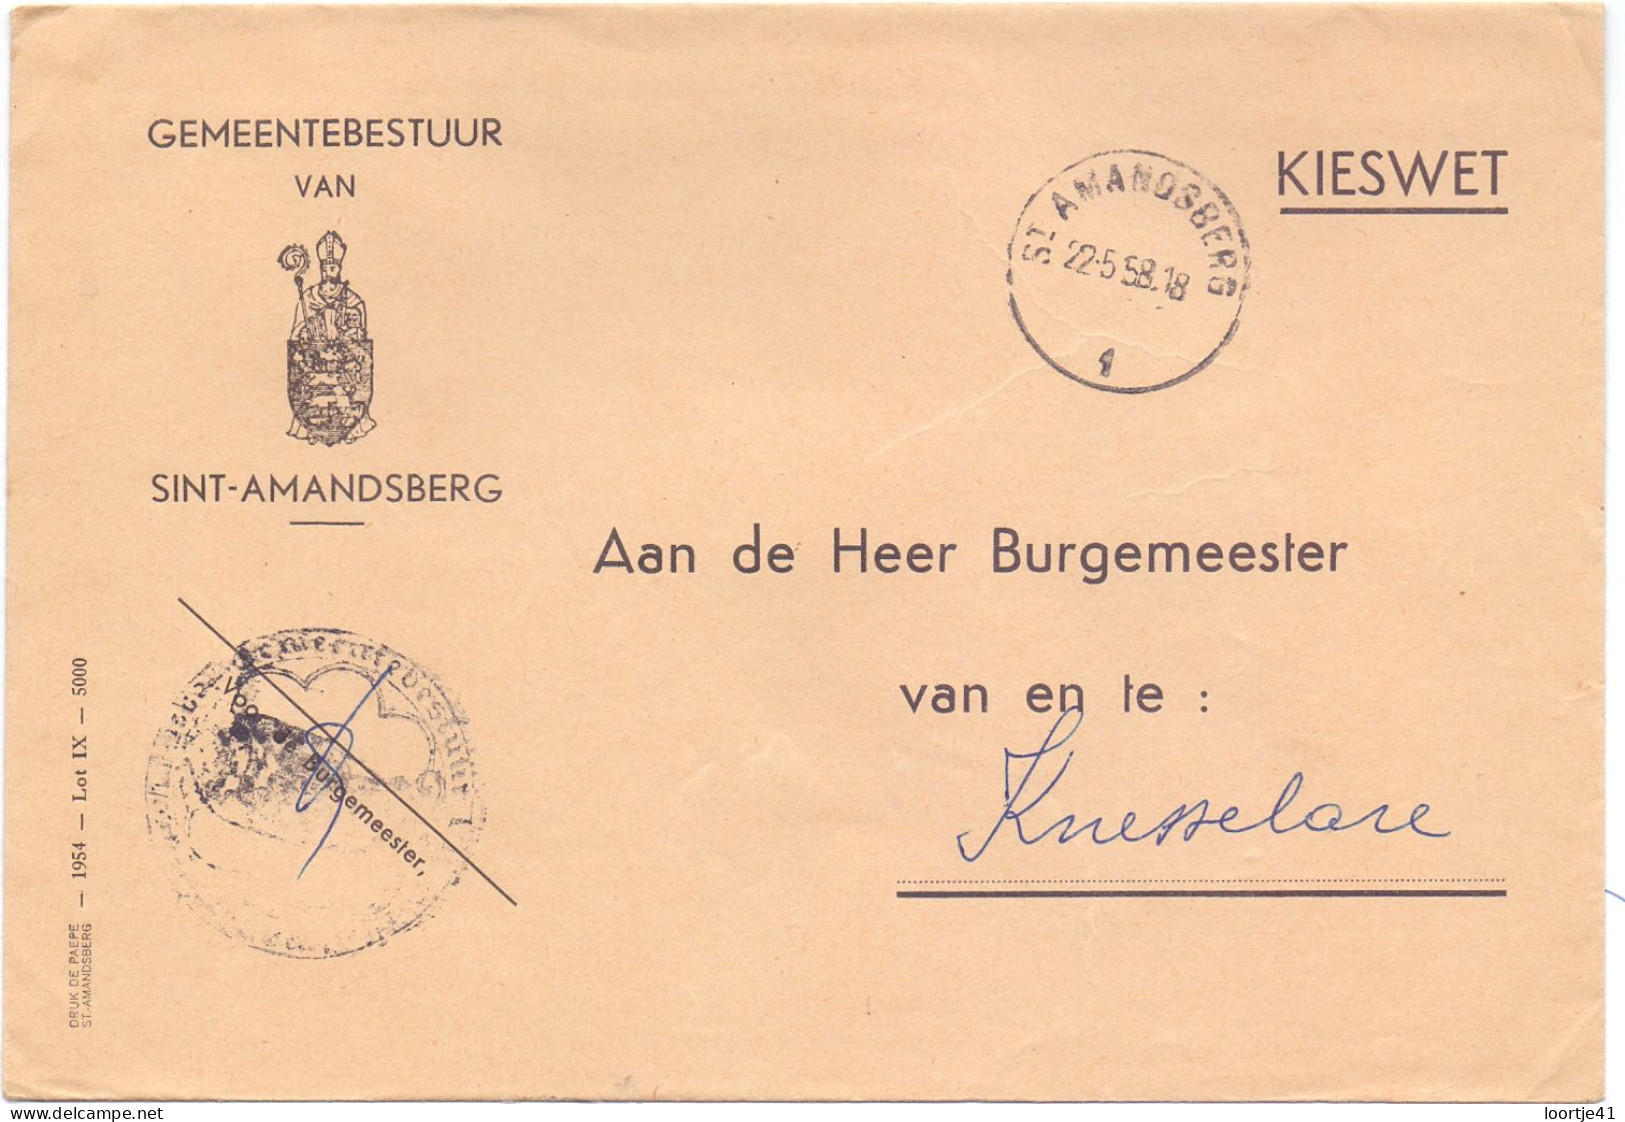 Omslag Enveloppe - Gemeentebestuur Sint Amandsberg - 1958 - Briefe